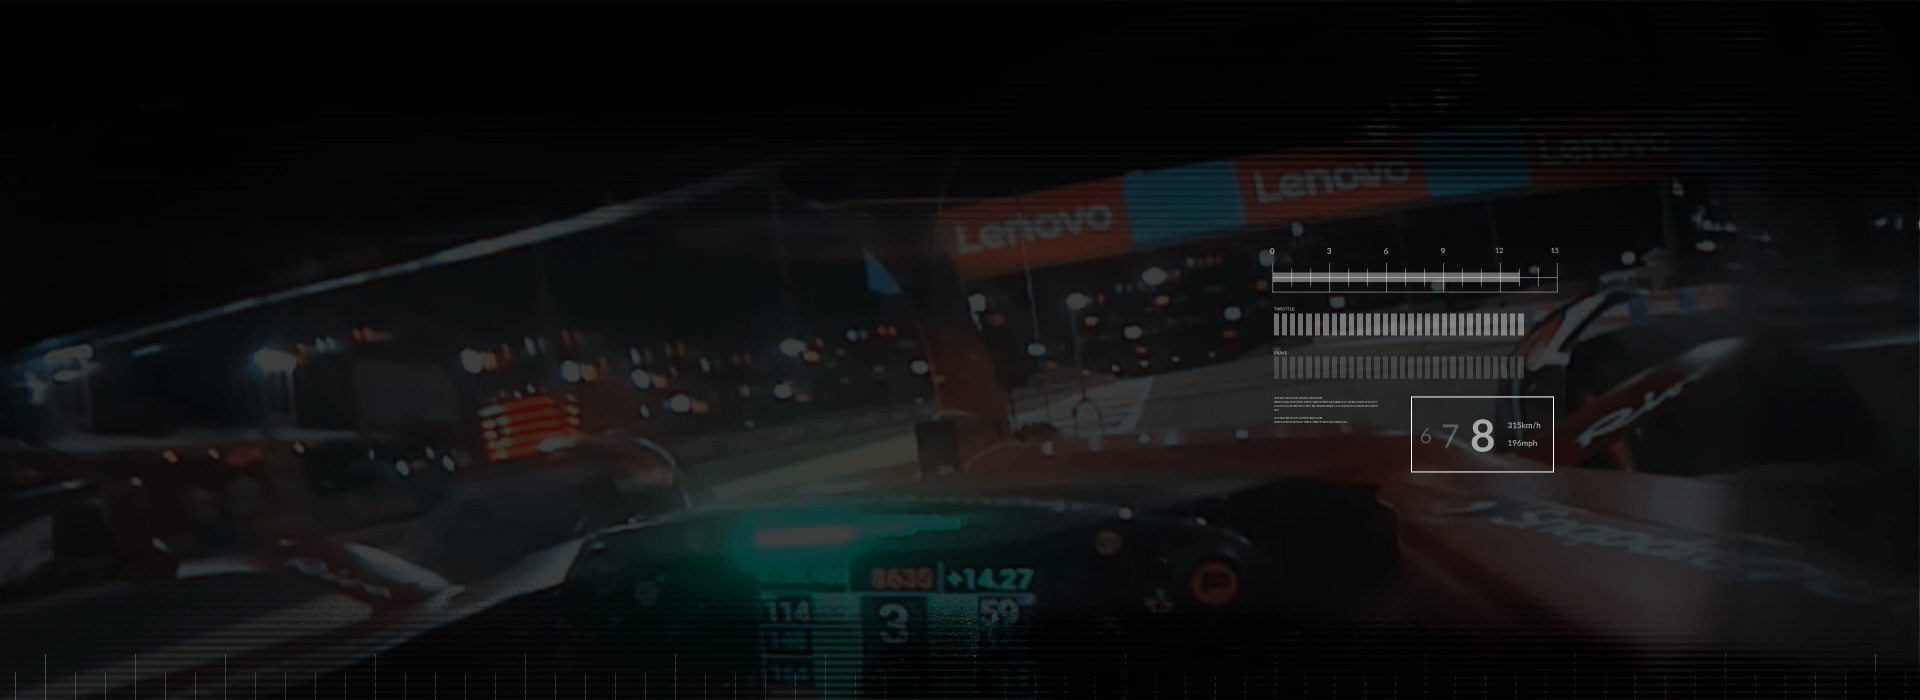 Lenovo-banners die op het circuit voorbijkomen gezien vanuit het perspectief van de F1-coureur